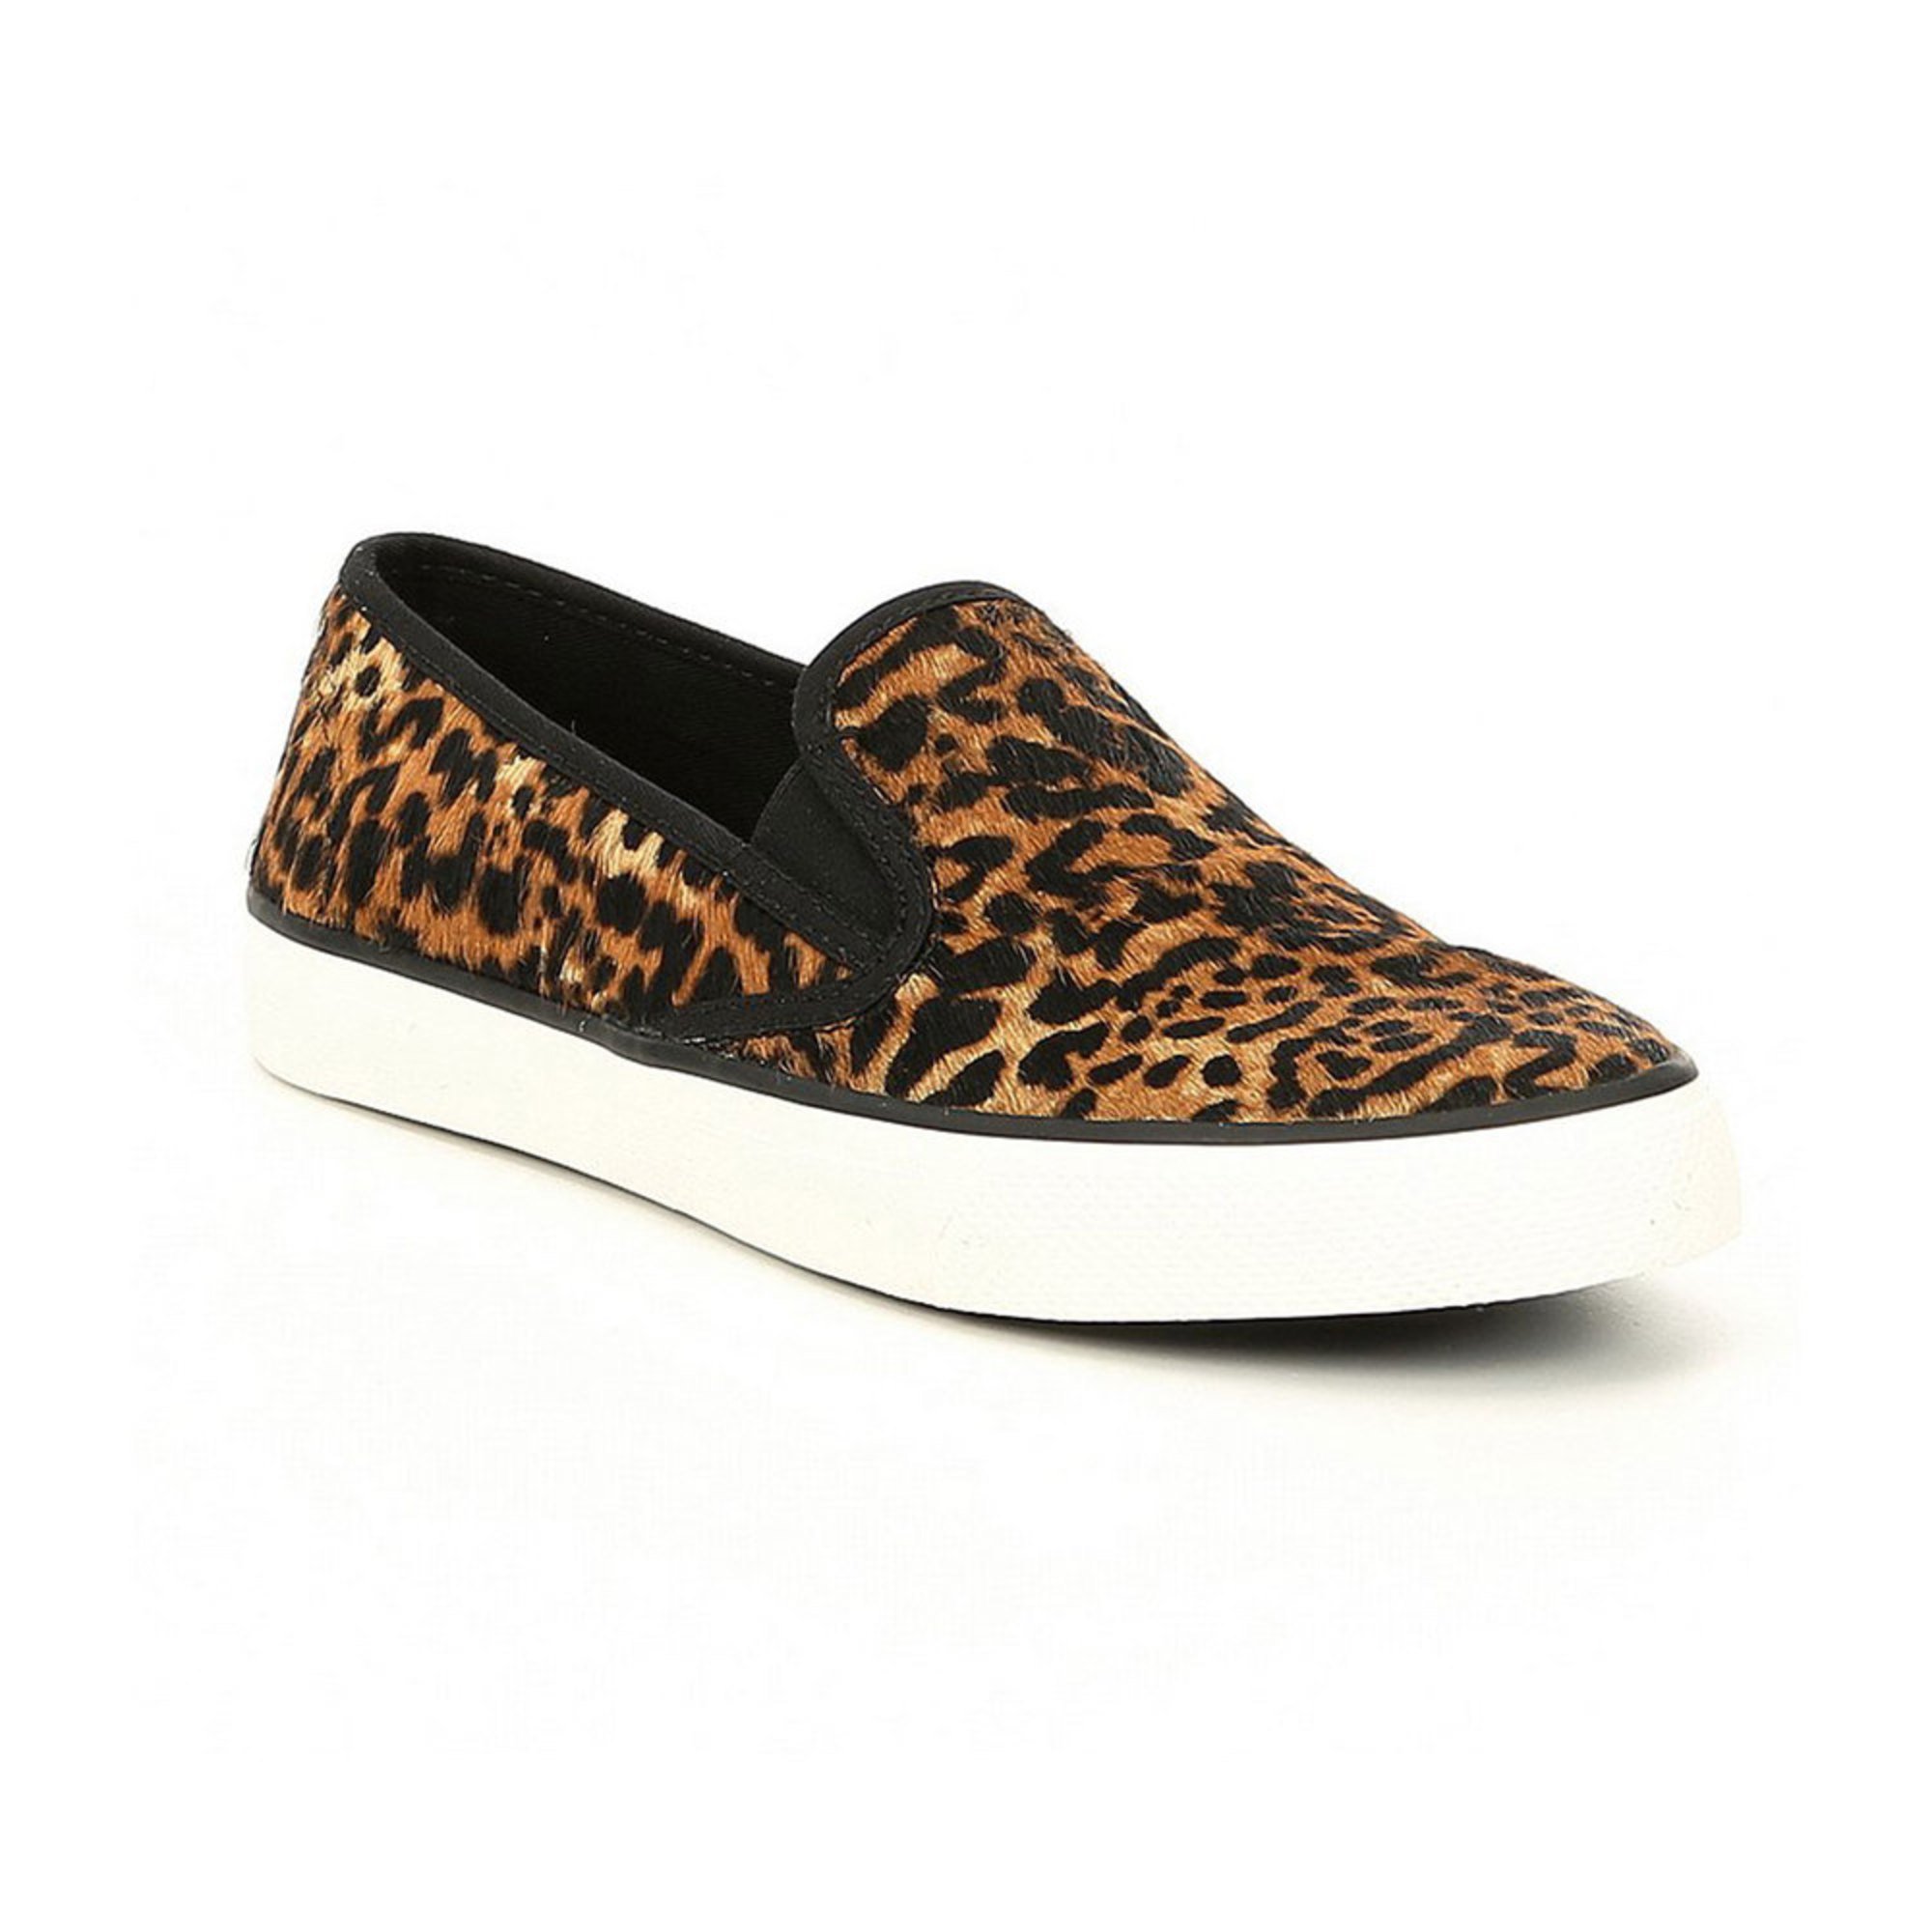 Sperry Women's Seaside Leopard Slip On | Women's Slip On Shoes | Shoes ...